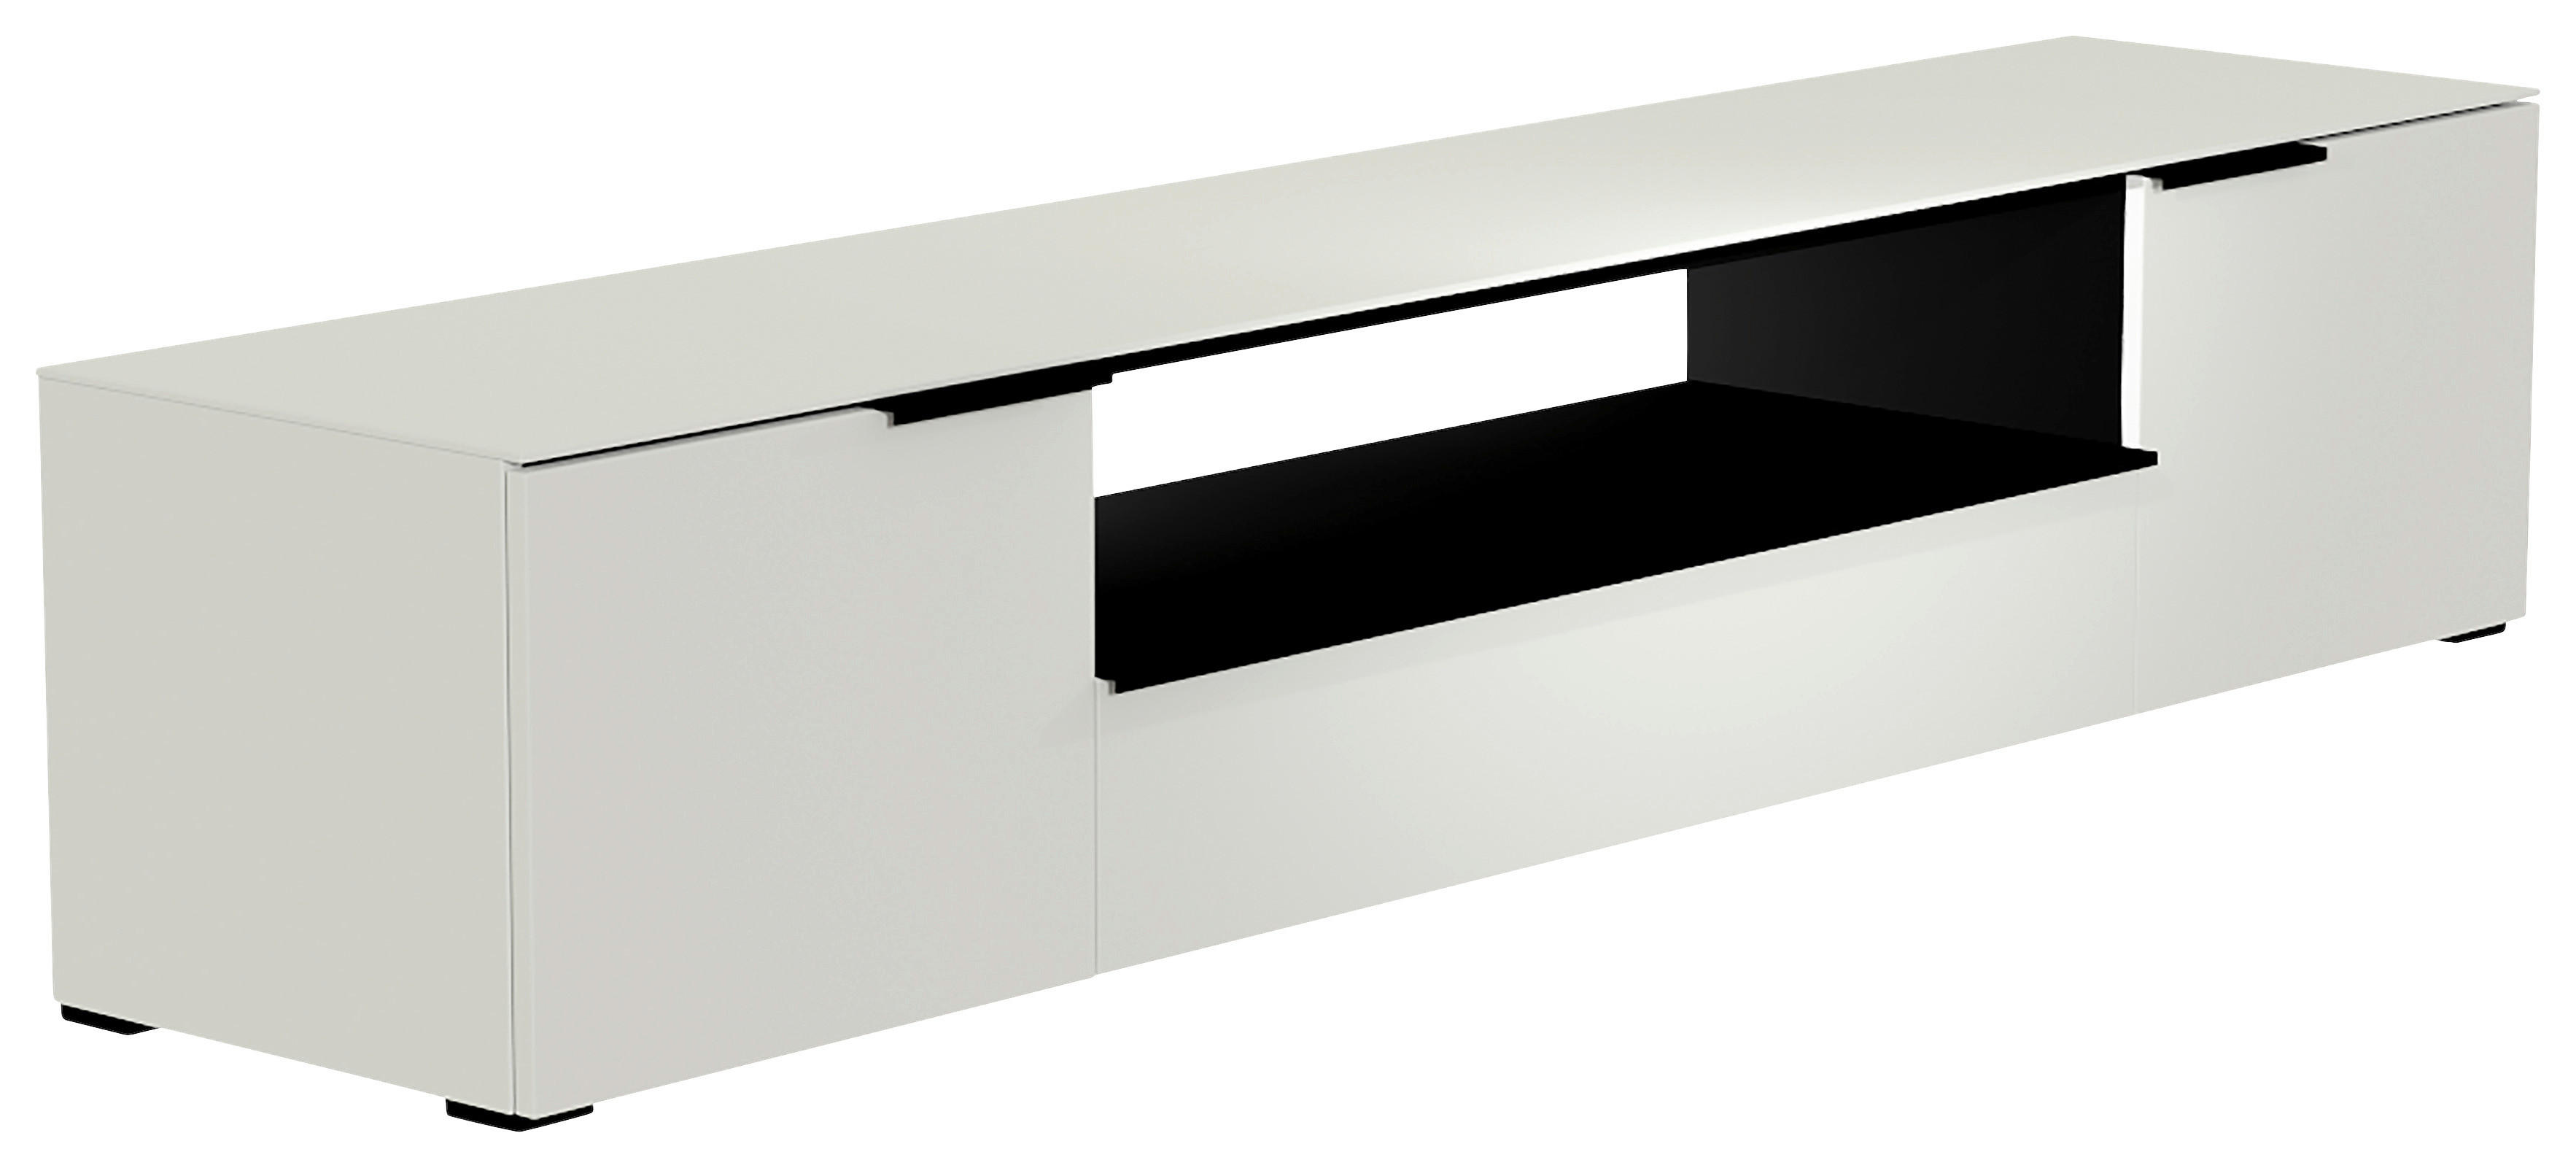 LOWBOARD Schwarz, Weiß  - Schwarz/Weiß, Design, Glas/Holzwerkstoff (210/43/45cm) - Moderano